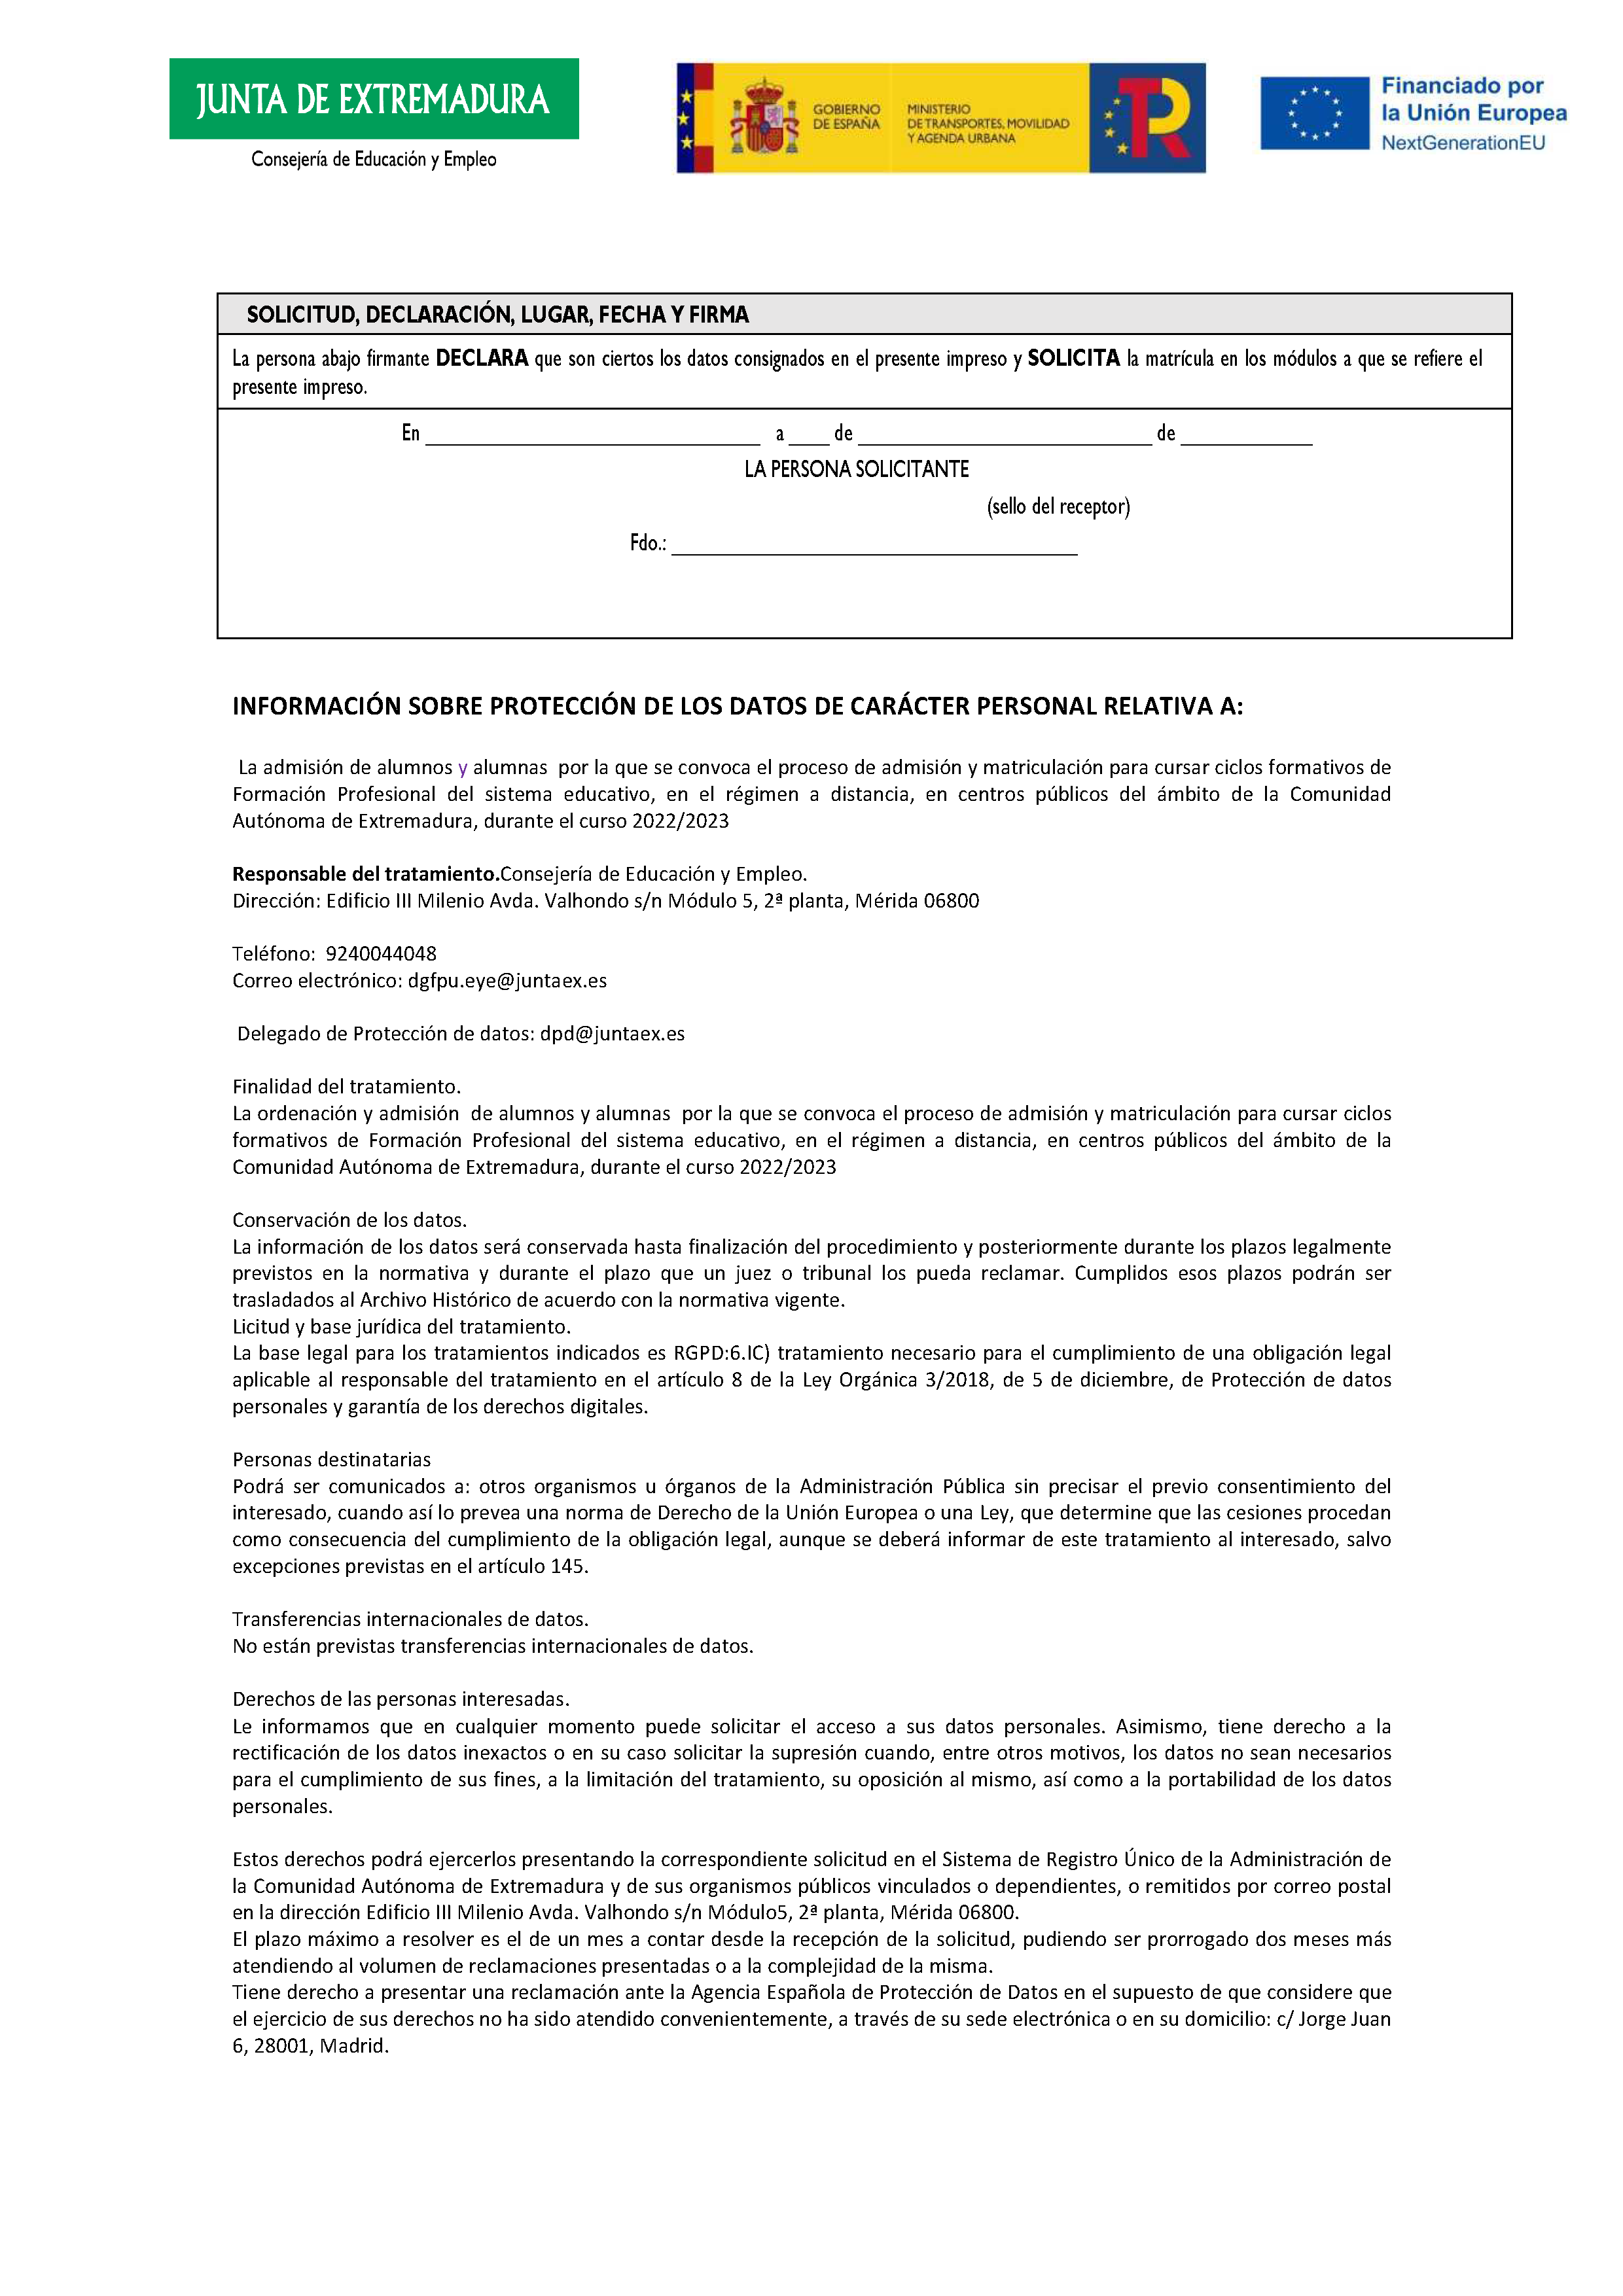 ANEXO FORMACIÓN PROFESIONAL DEL SISTEMA EDUCATIVO RÉGIMEN A DISTANCIA Pag 28